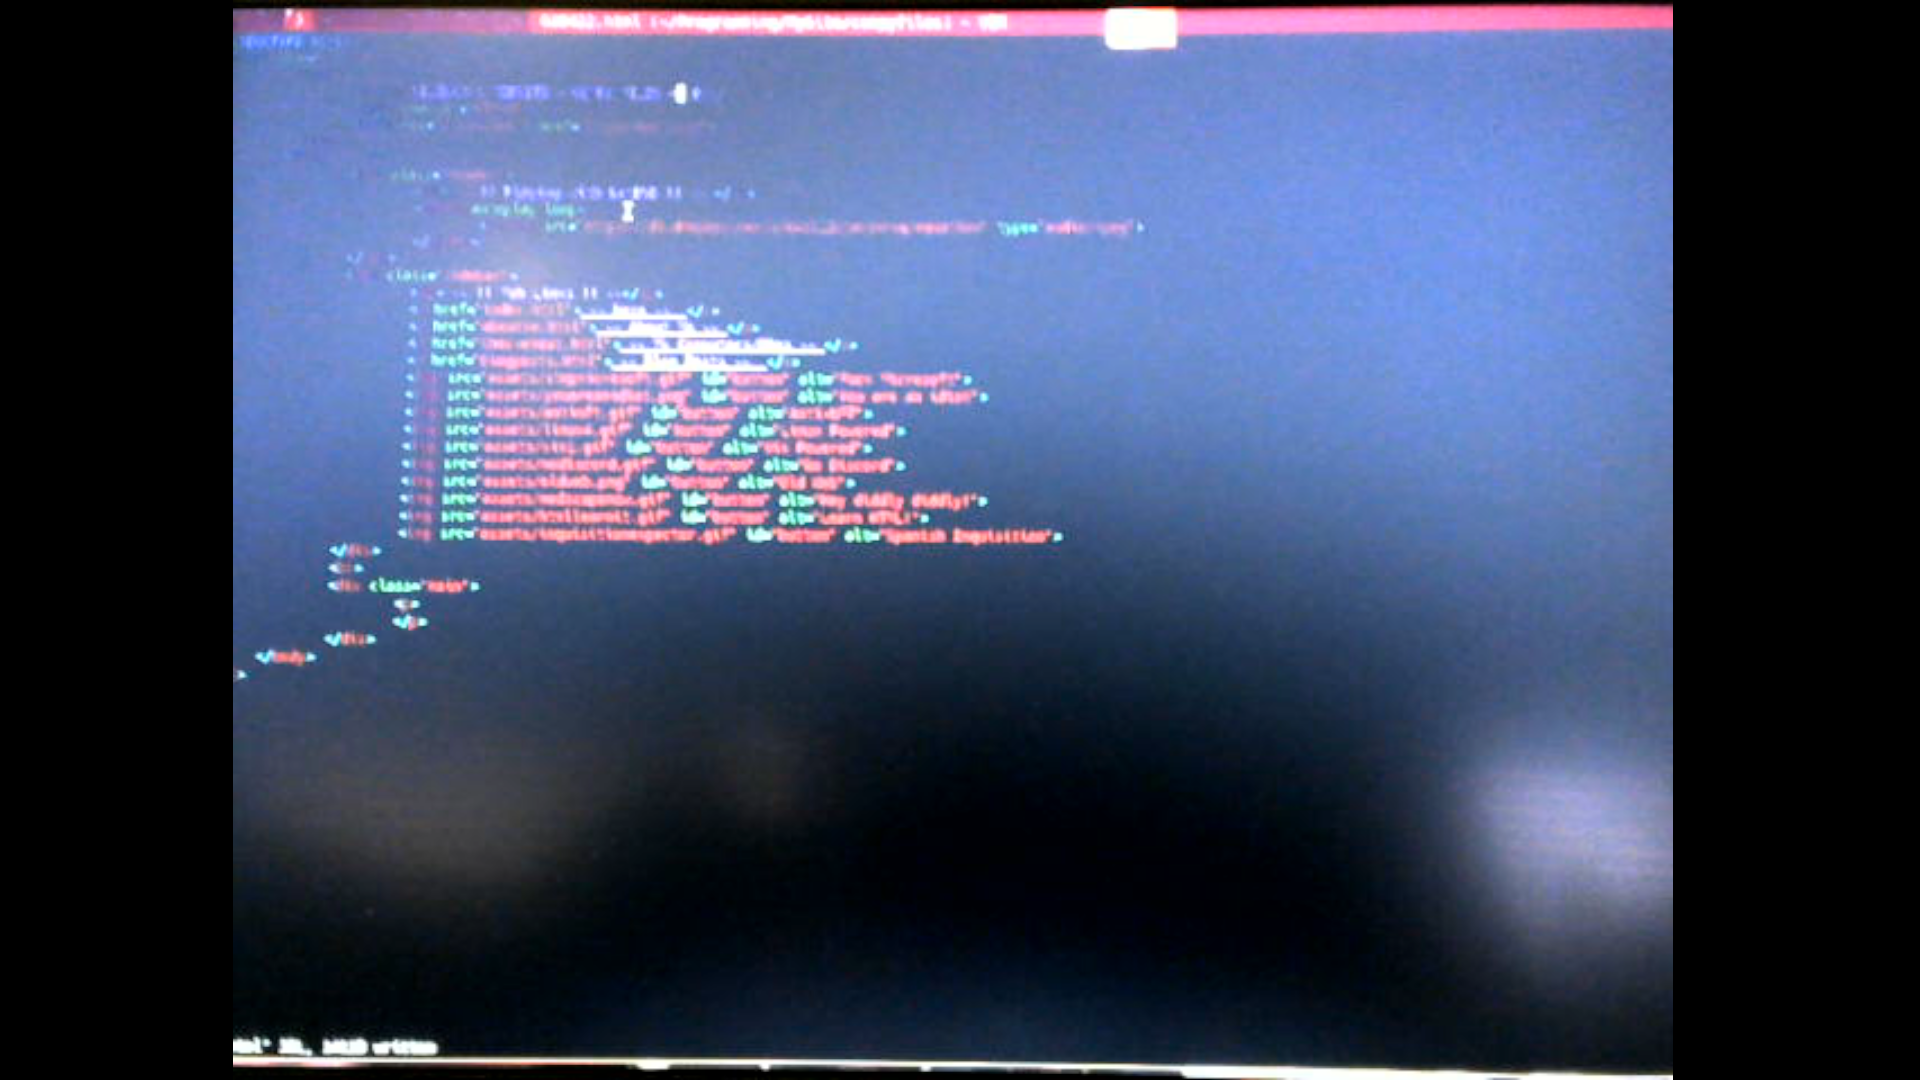 Making my website in Vim on Gentoo Linux